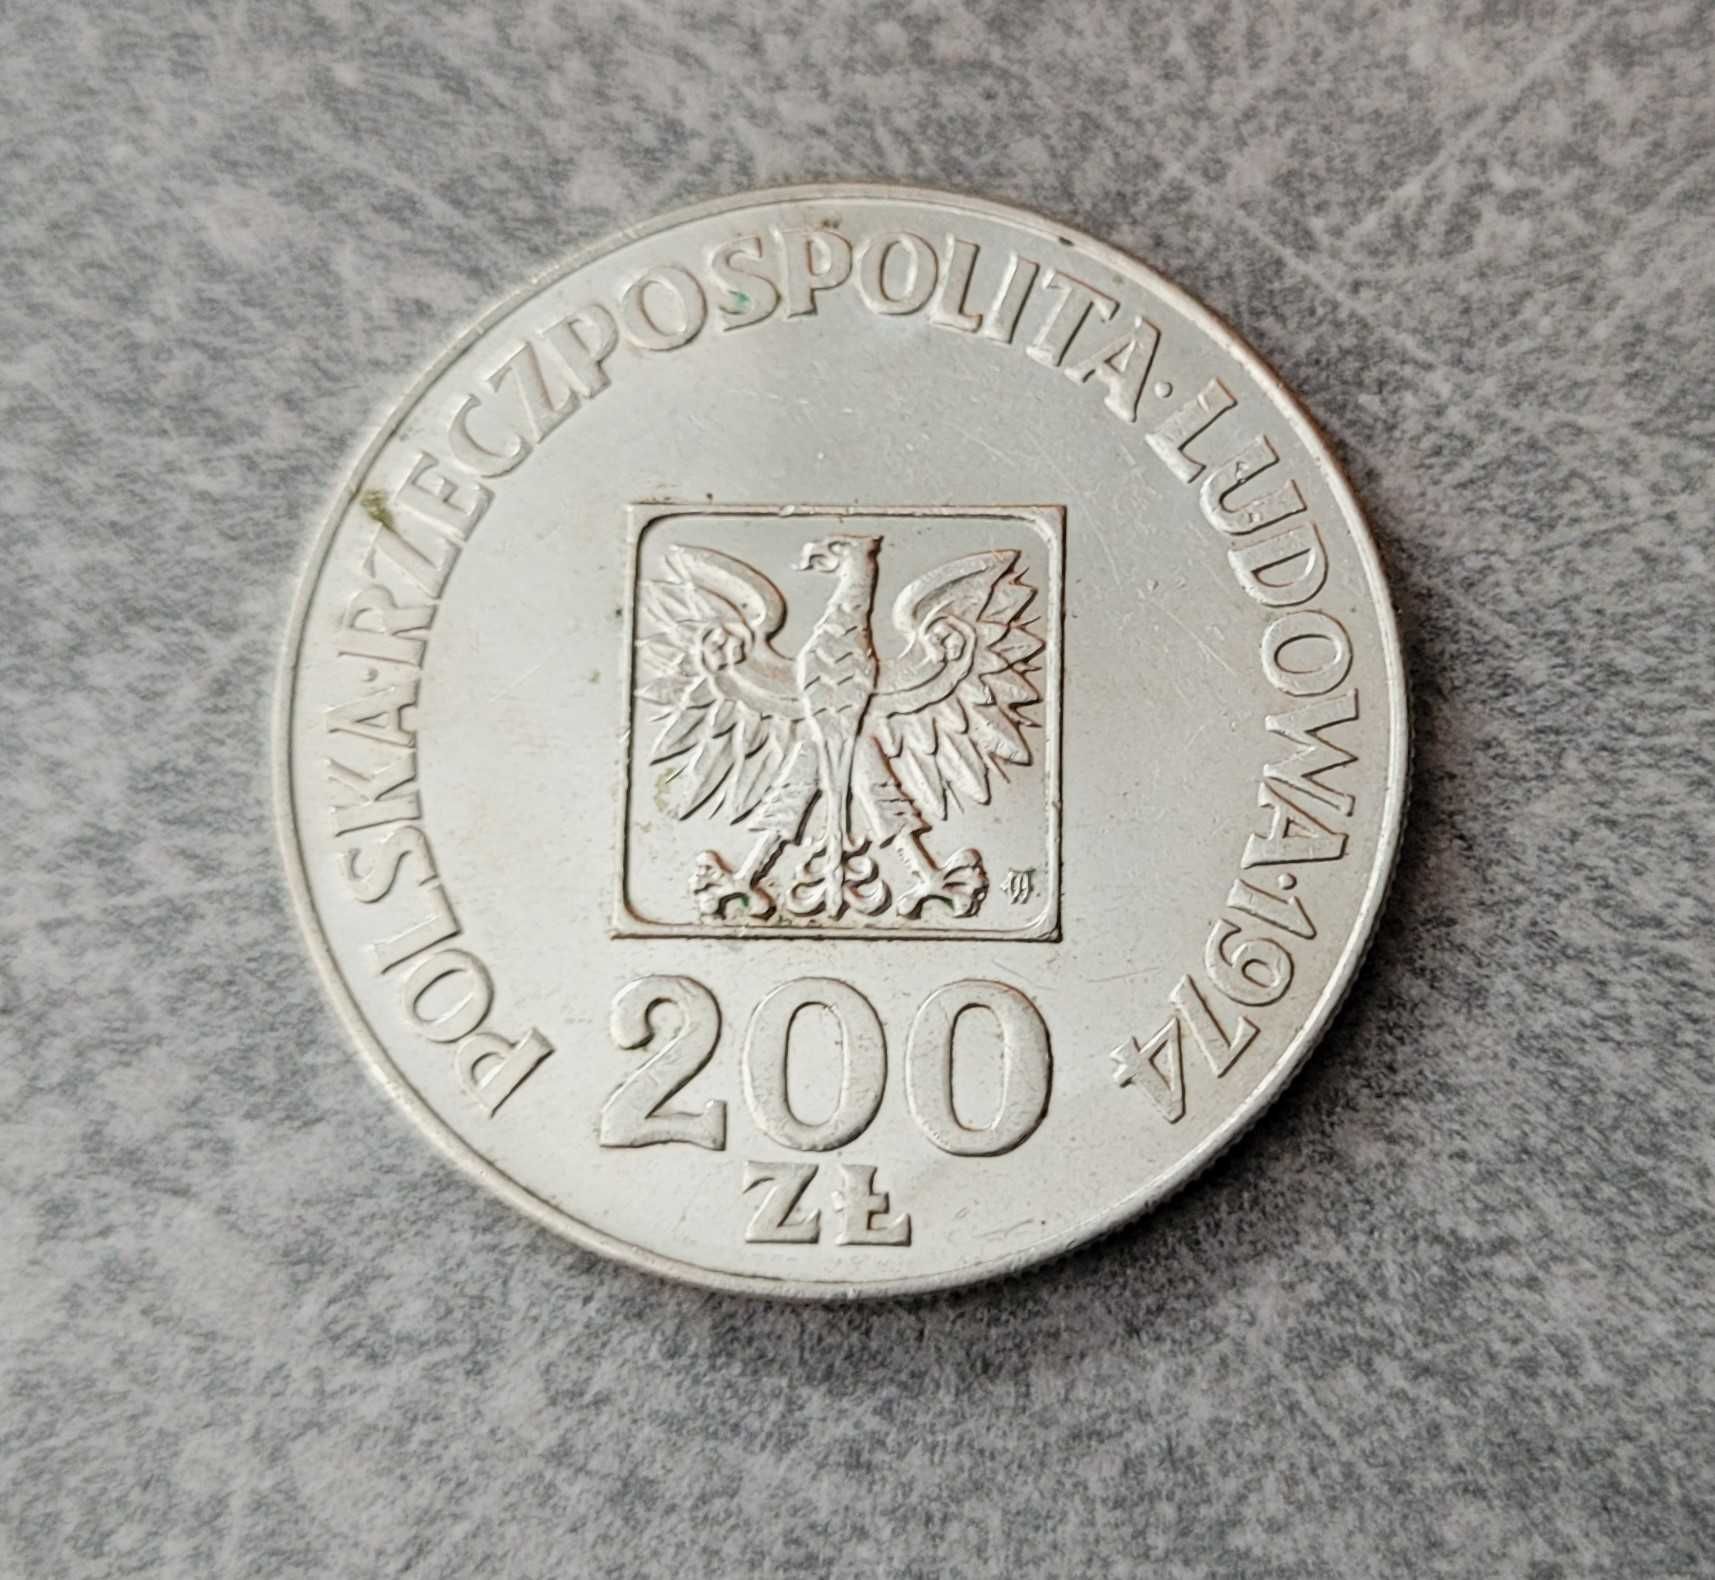 108) POLSKA srebro- 200 Złotych - 1974 r.